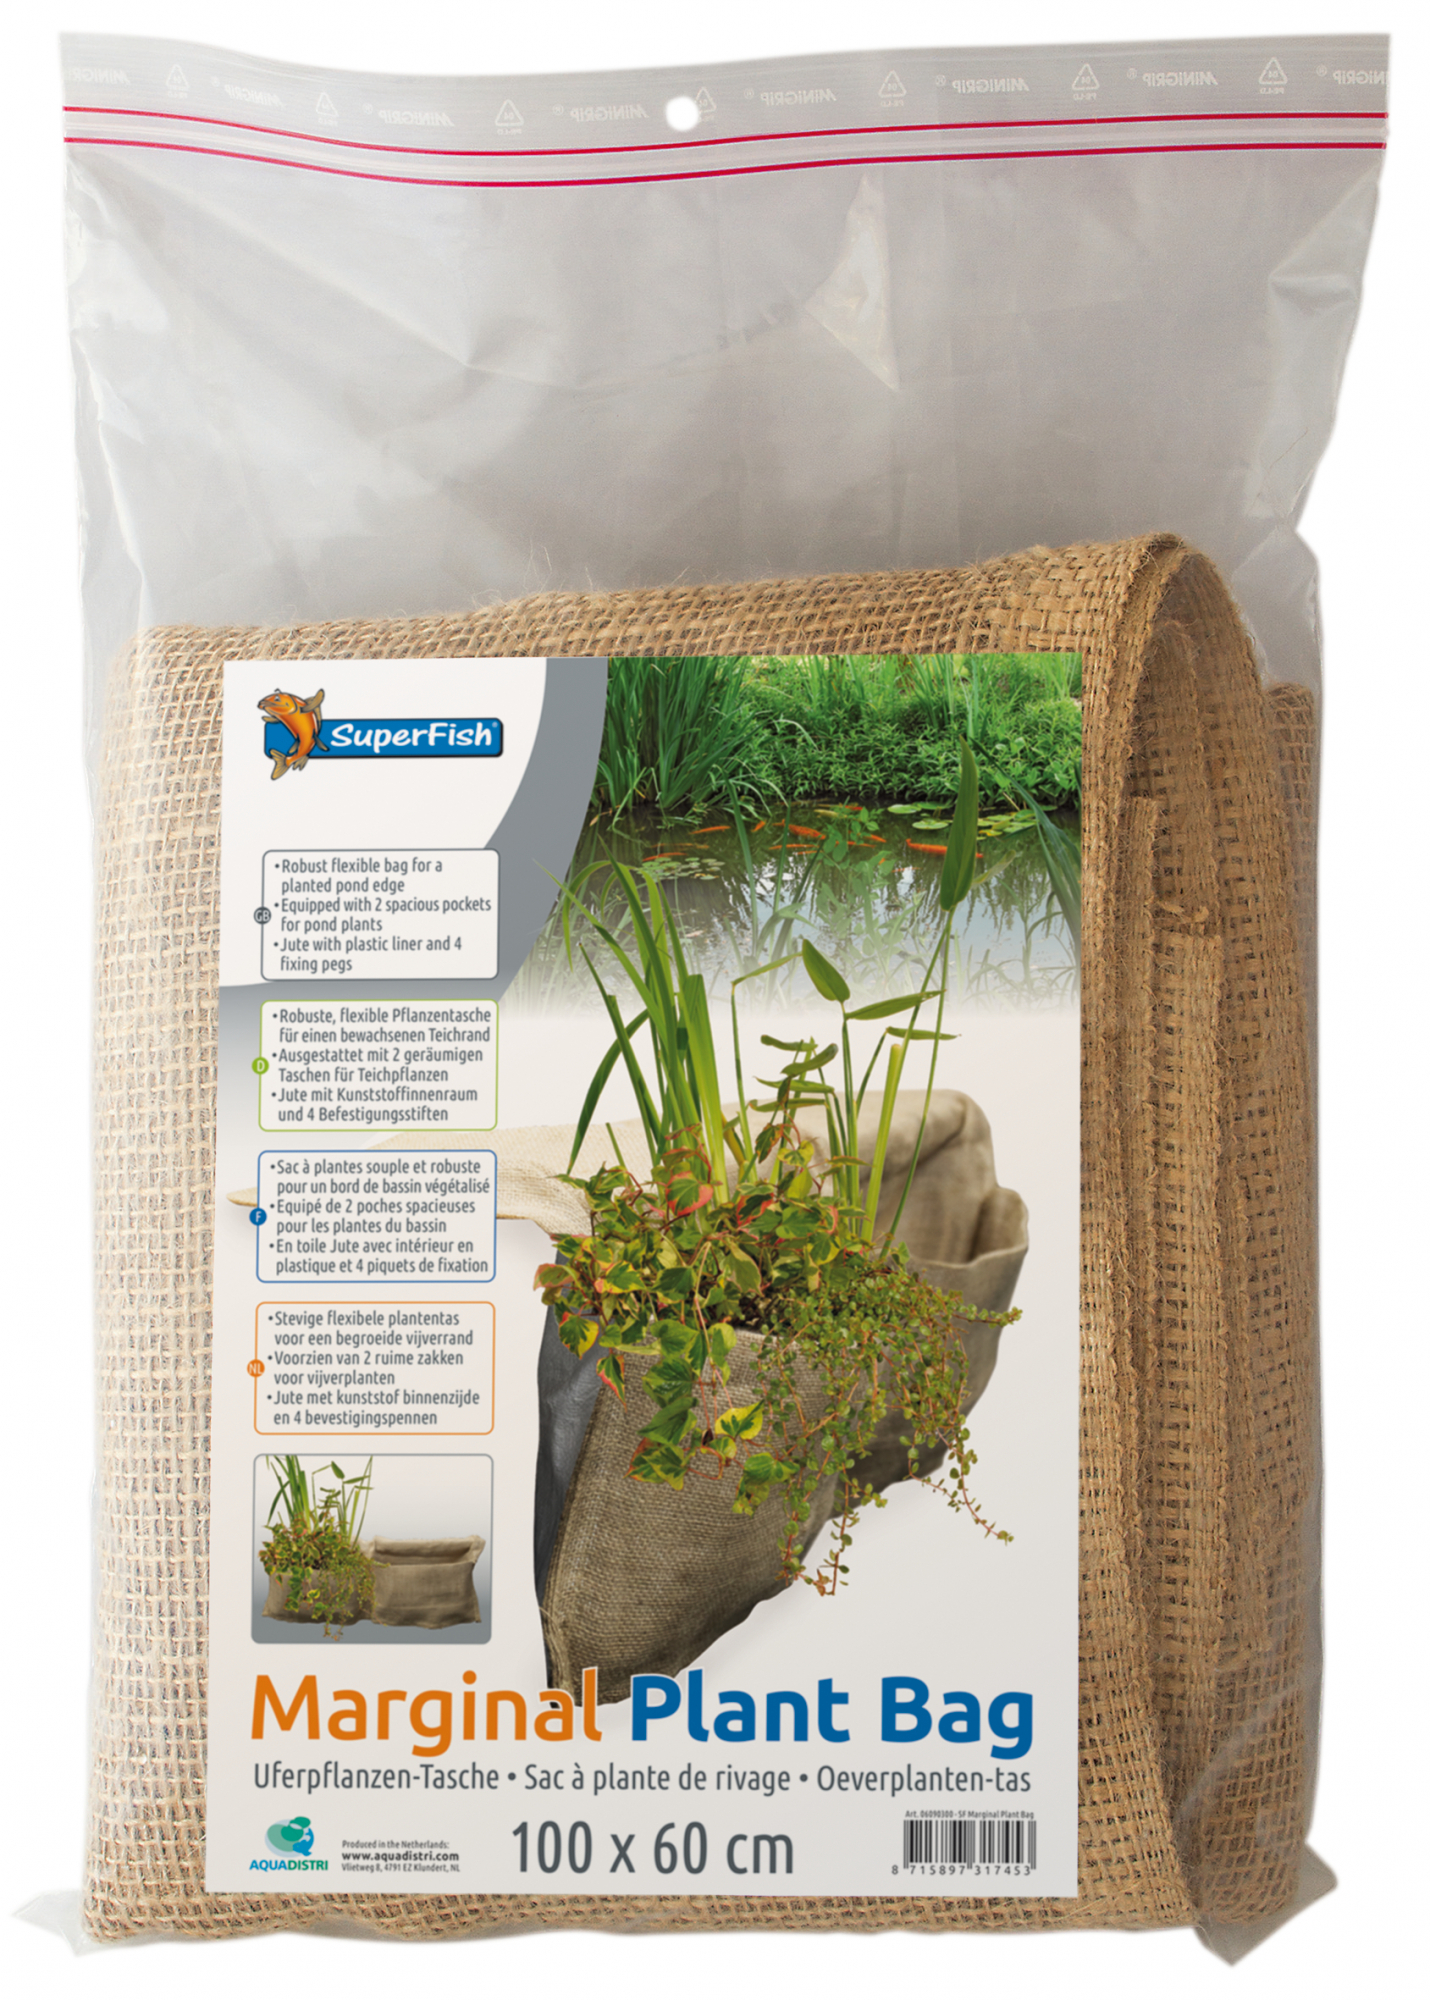 Superfish Marginal Plant Bag Sacchetto per piante per bordo dello stagno